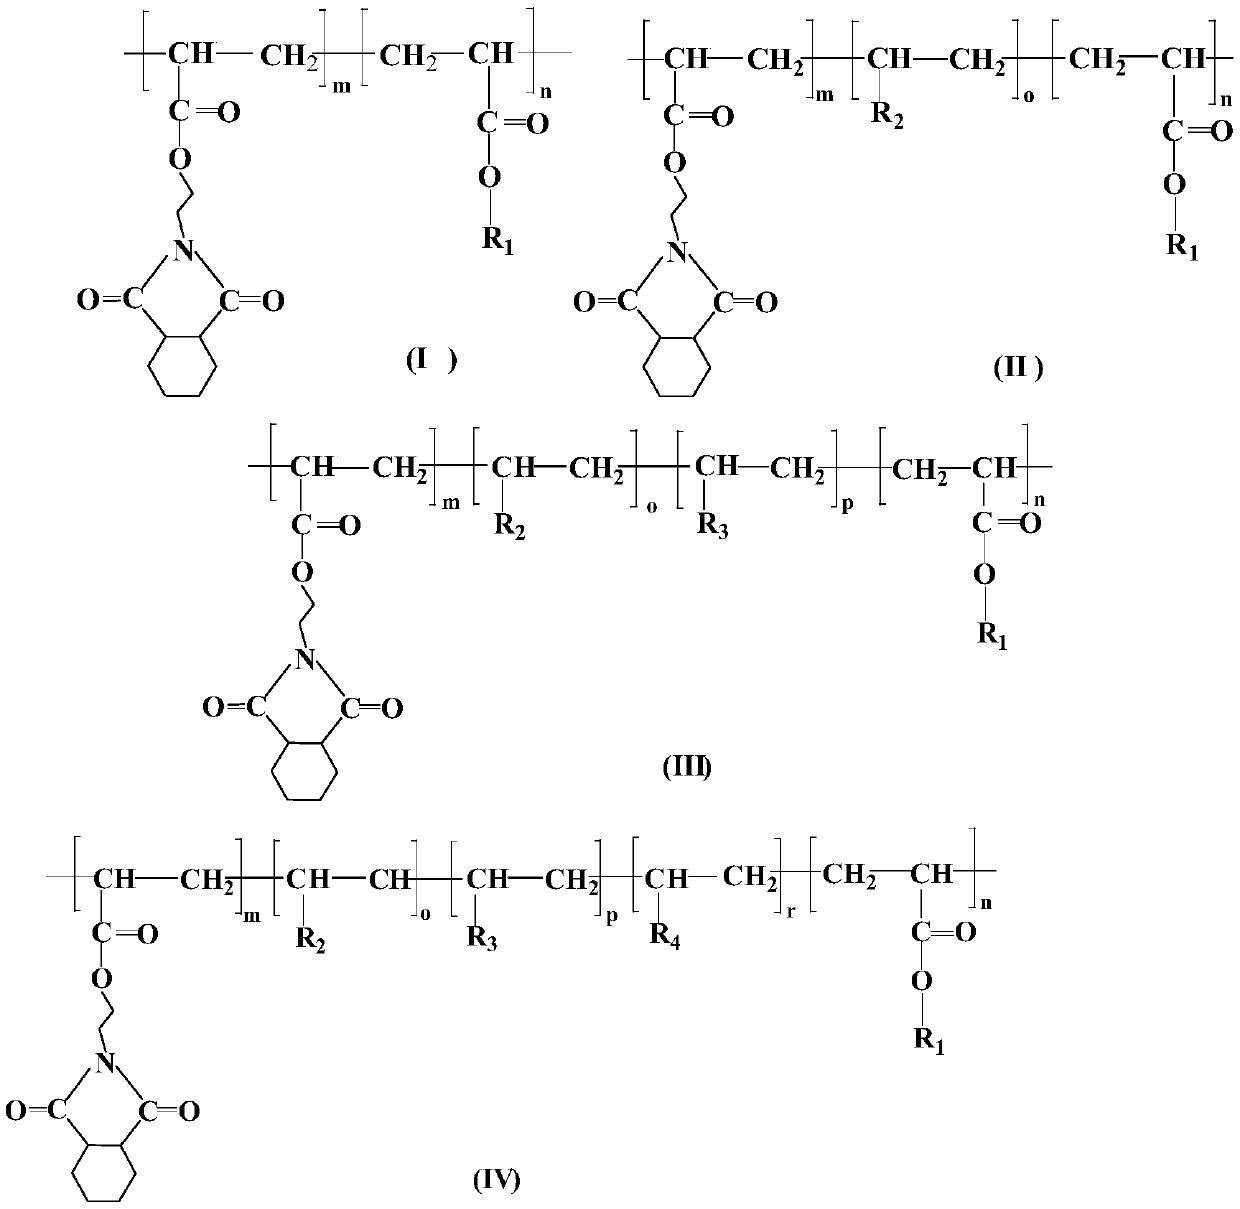 A photosensitive imaging composition comprising cyclohexaneamide monofunctional acrylate copolymer